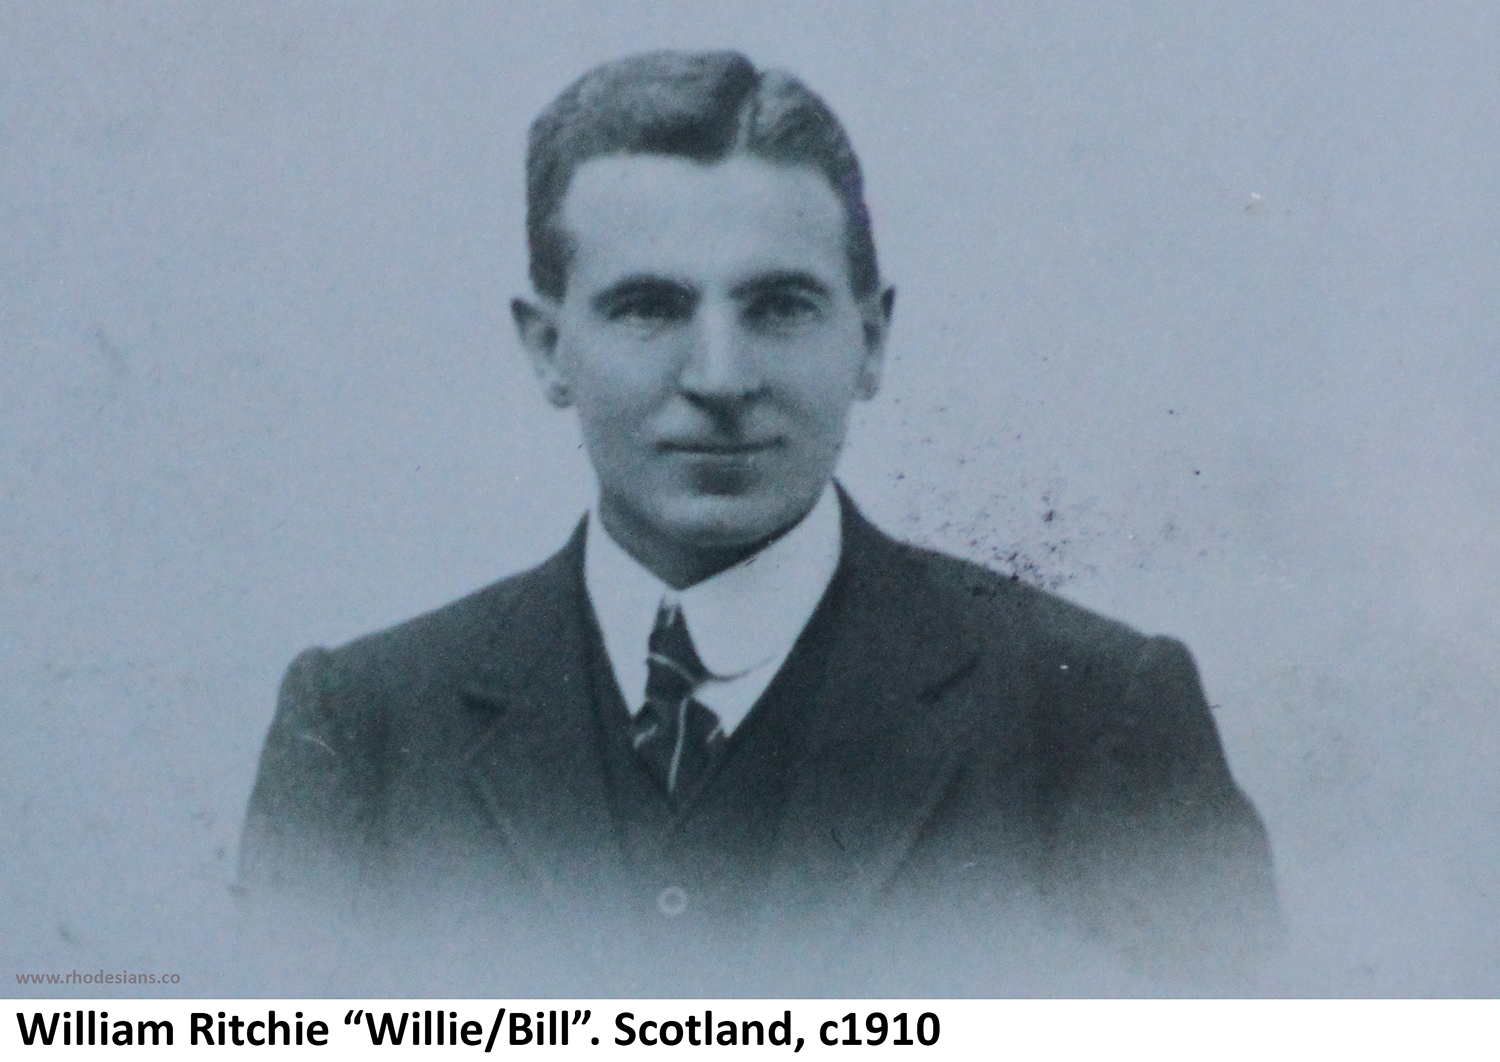 William Ritchie portrait in Scotland around 1910